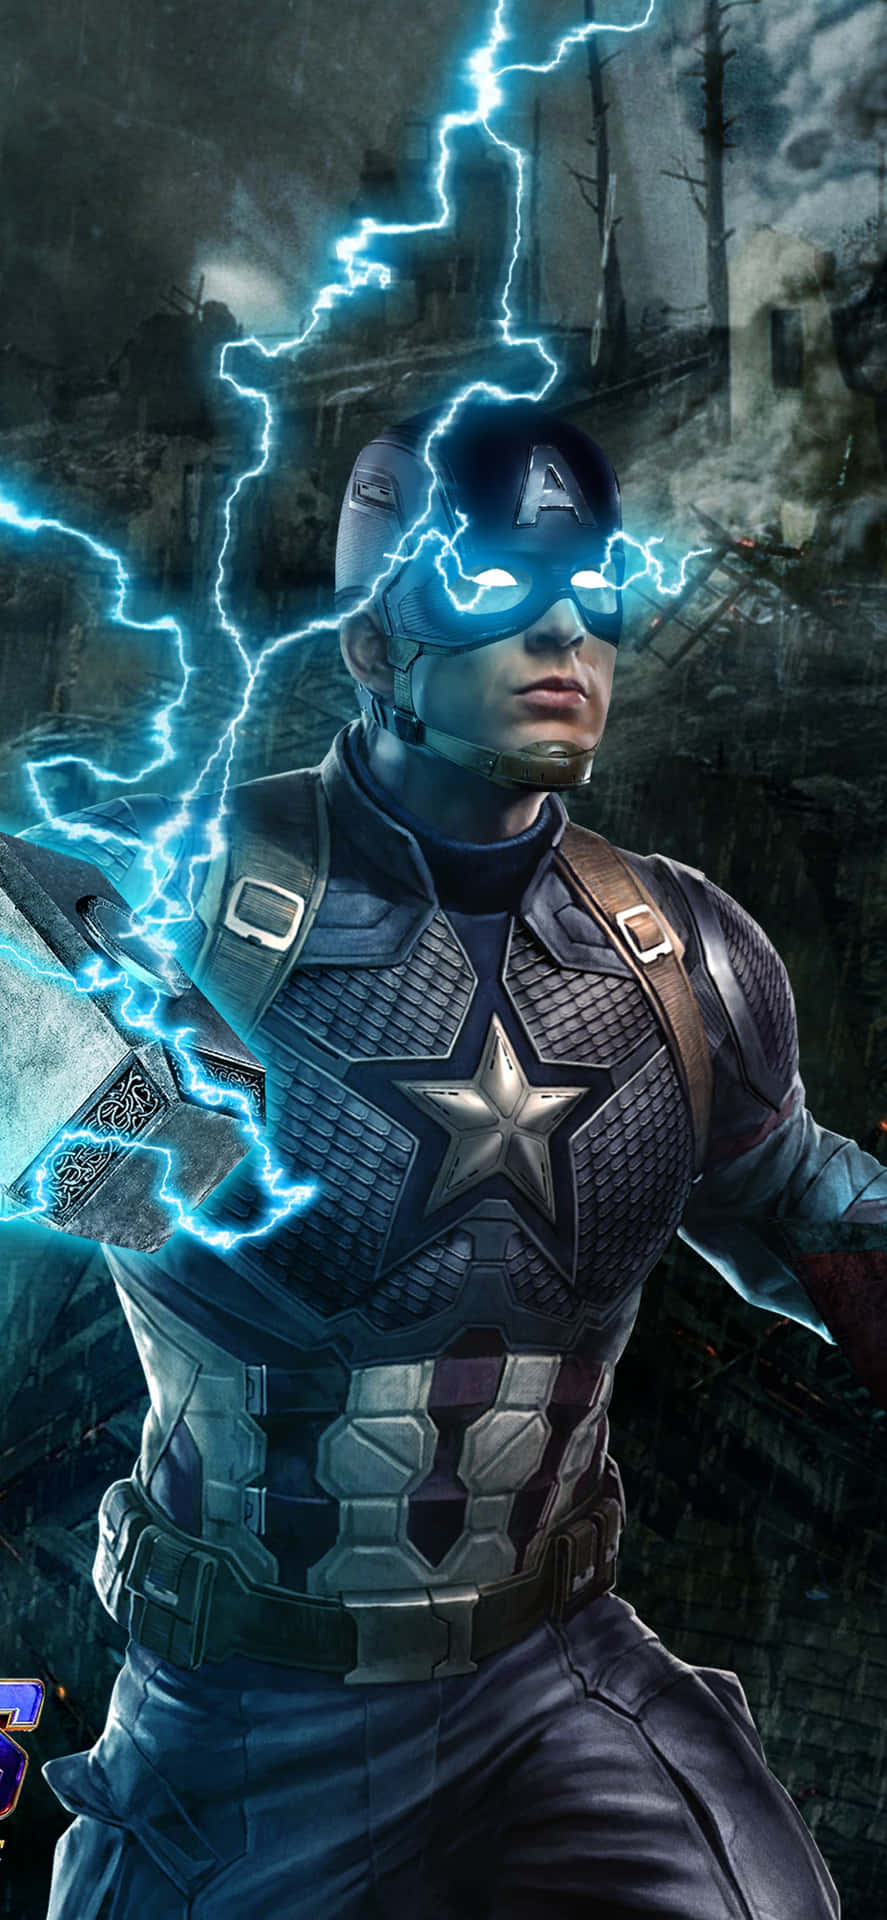 The Avengers Assemble - Captain America in Endgame Wallpaper